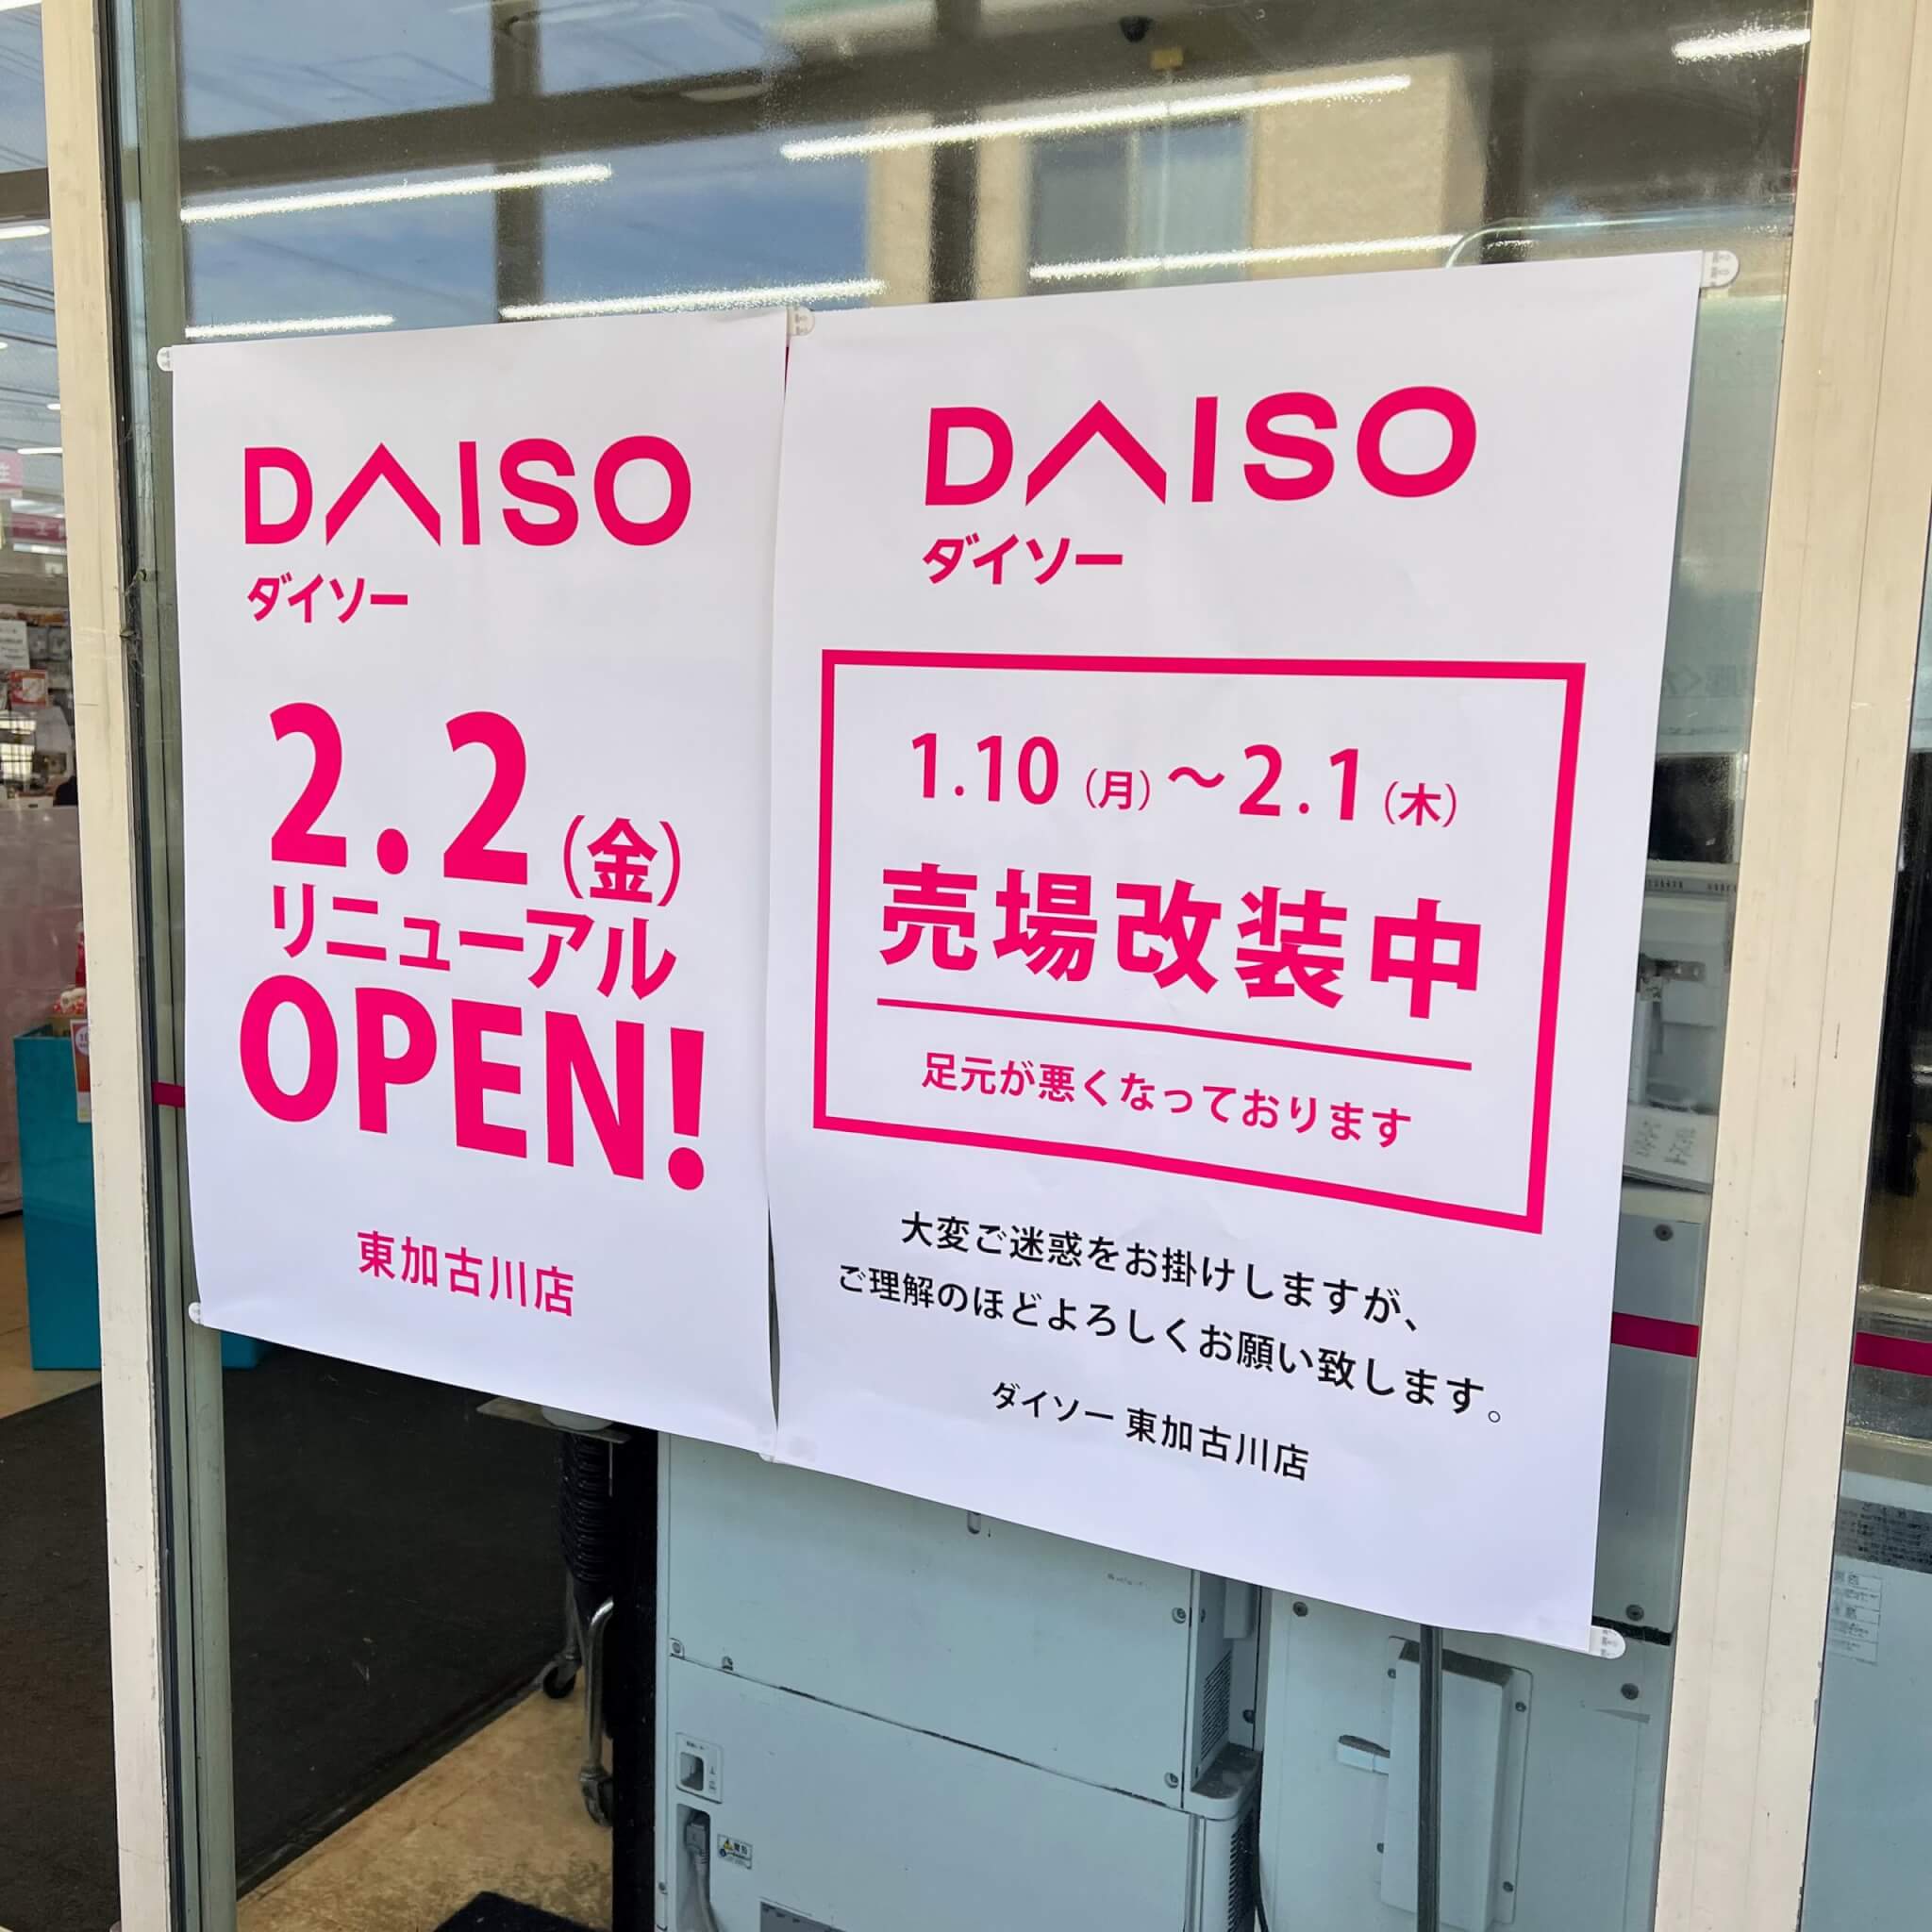 ダイソー東加古川店のリニューアル予告